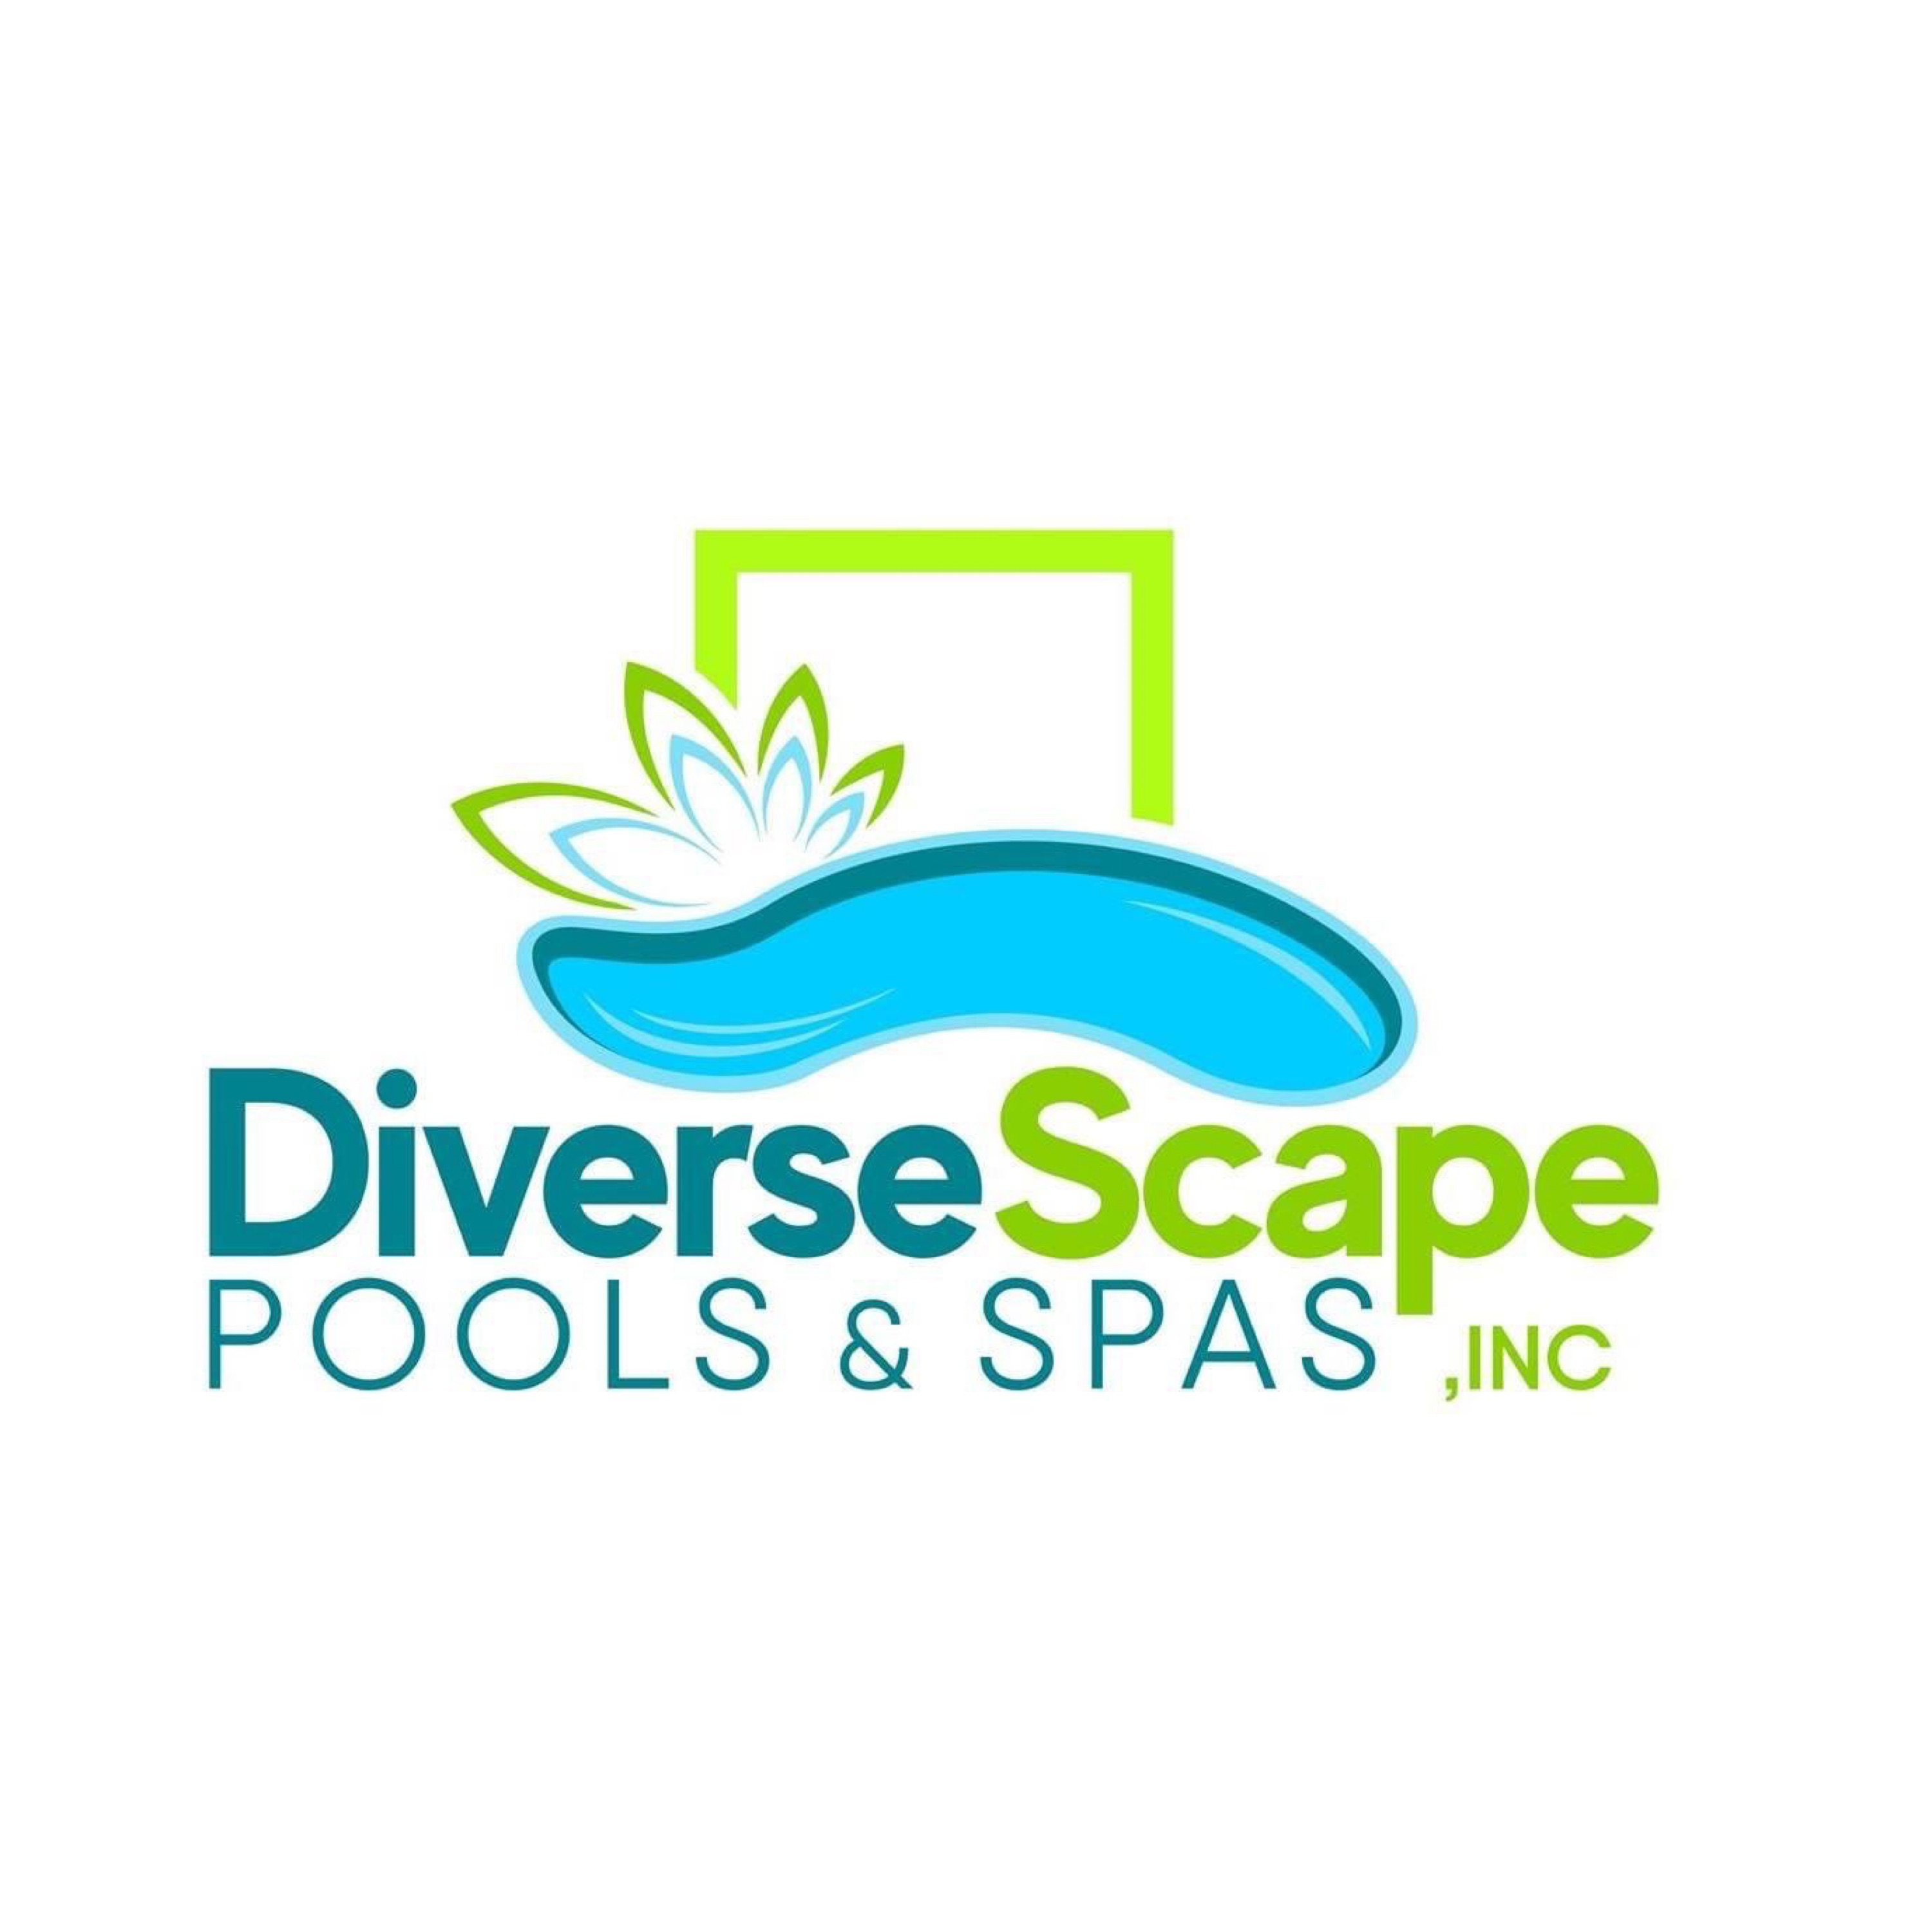 Diverse Scape Pools & Spas Logo